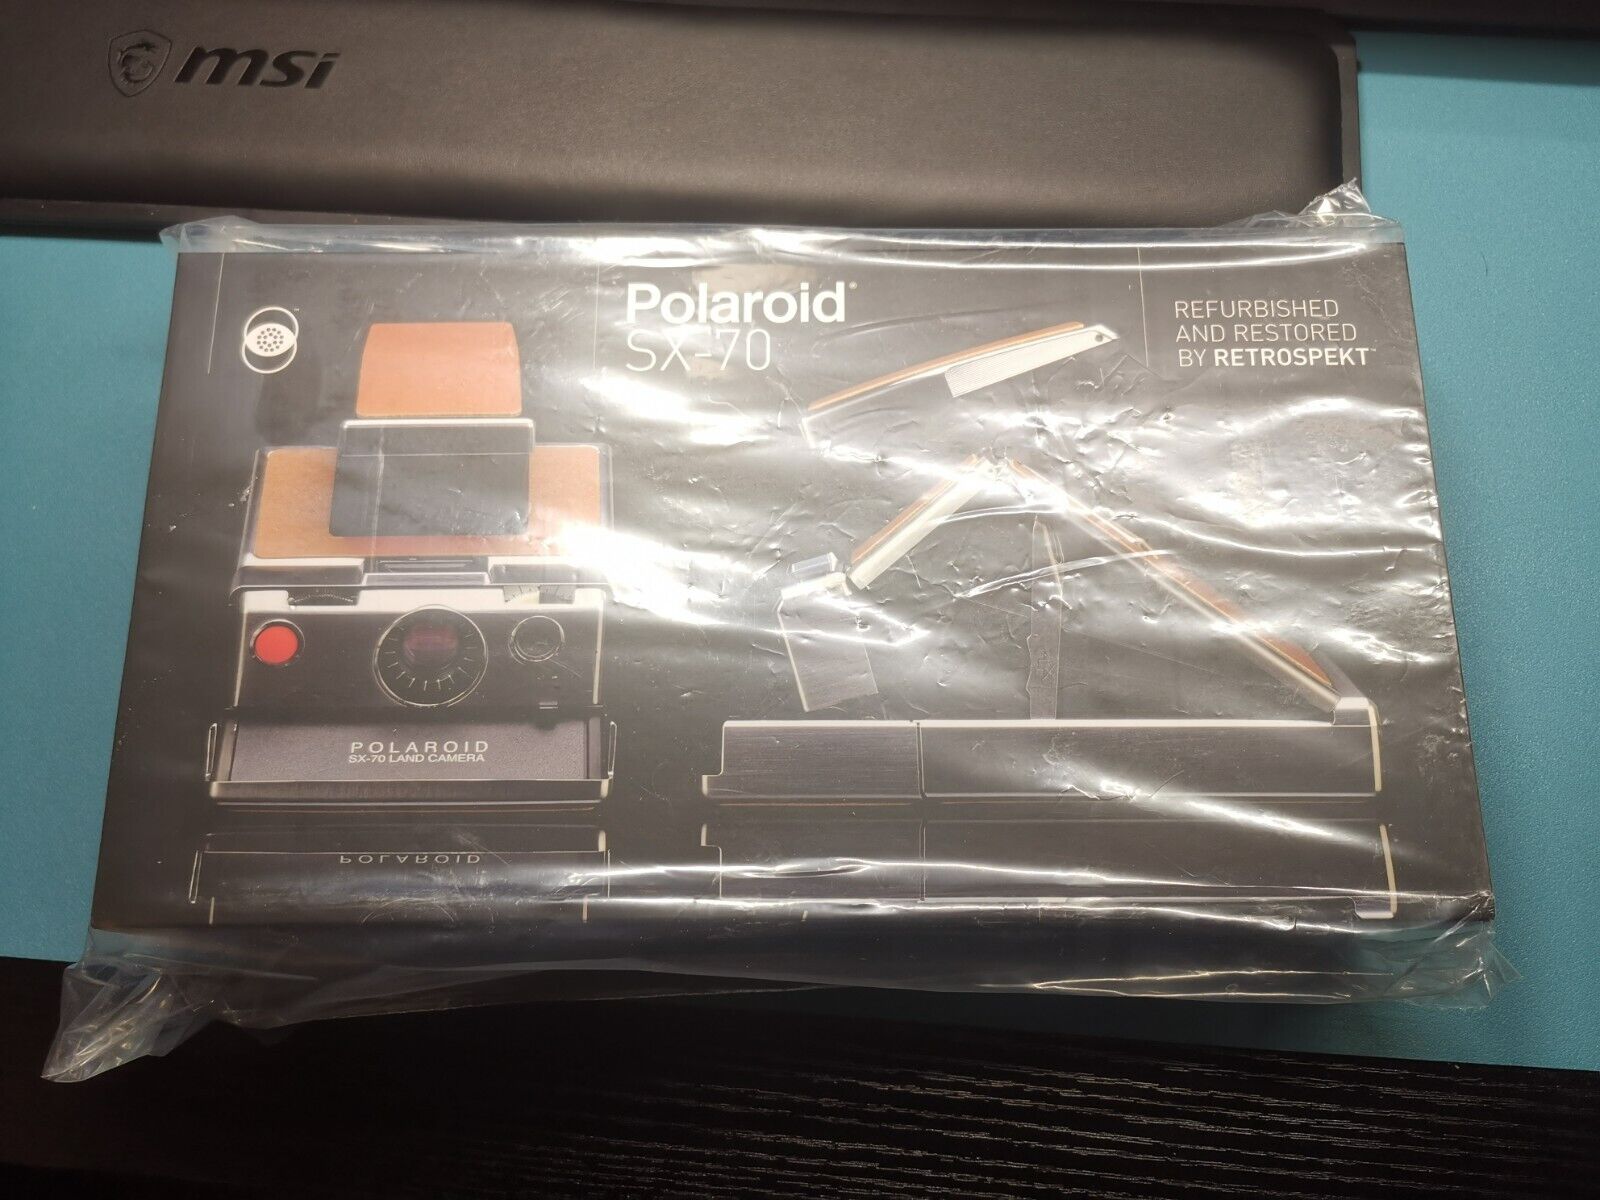 polaroid sx-70 land camera (fully restored by retrospekt) nearly mint